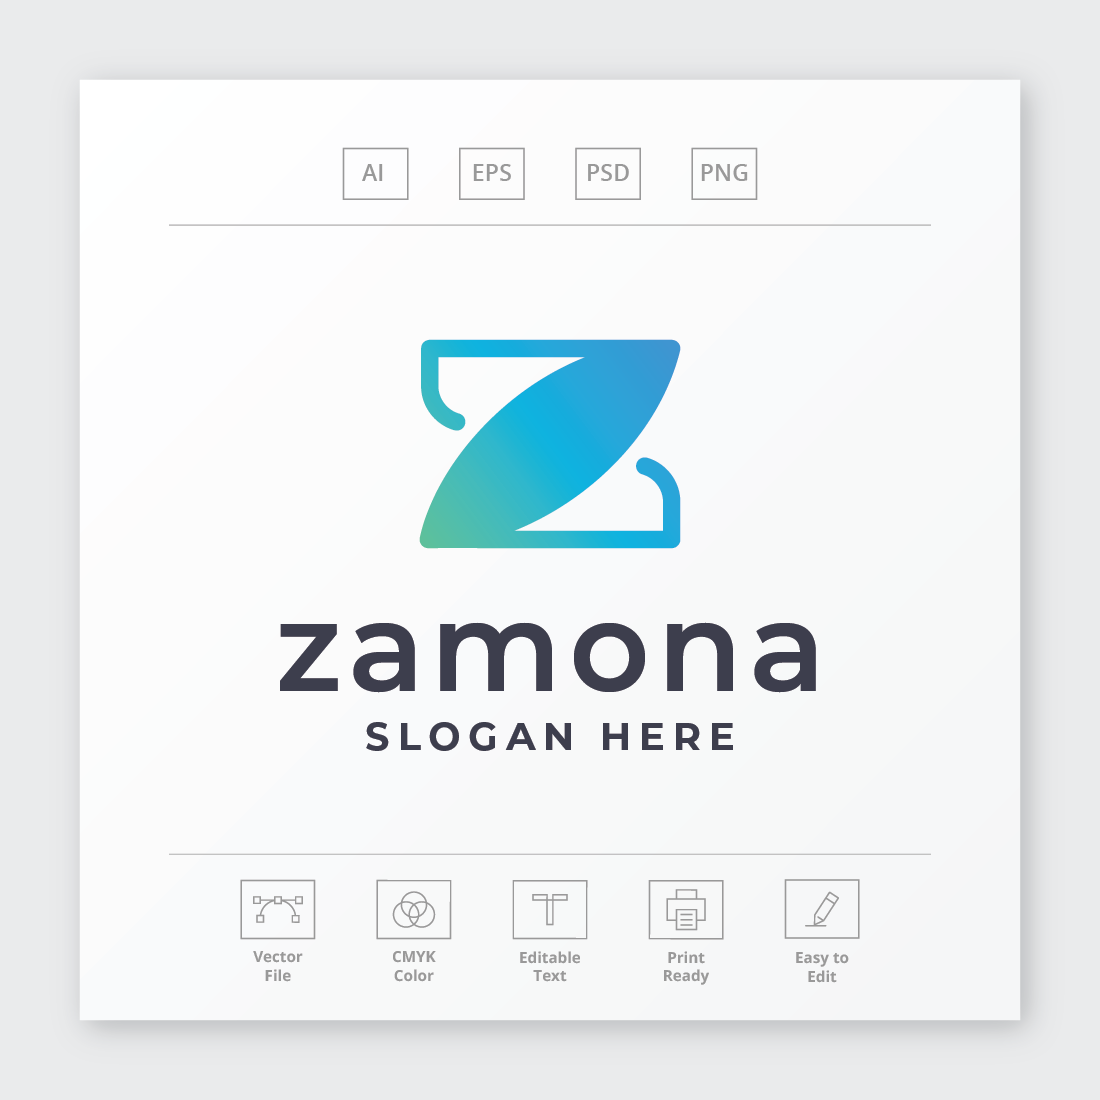 Zamona Letter Z Logo cover image.